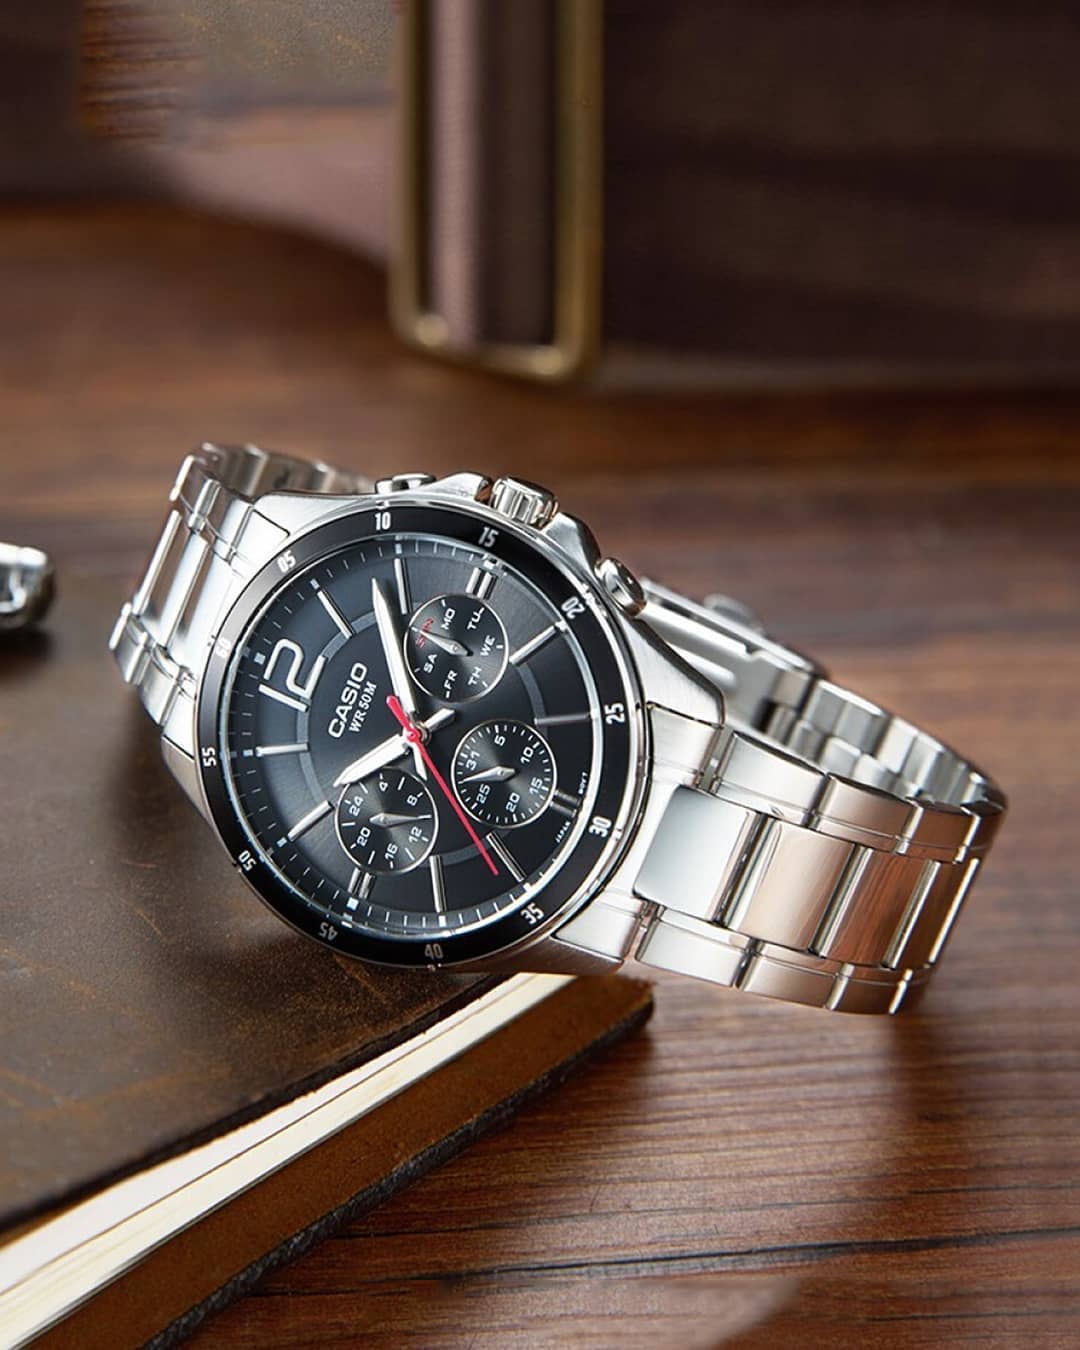 มุมมองเพิ่มเติมของสินค้า Win Watch Shop Casio Standard นาฬิกาผู้ชาย สายสเตนเลส รุ่น MTP-1374D-1AVDF -มั่นใจ สินค้าของแท้ 100% รับประกันสินค้า 1 ปี (สินค้าขายดีสุดๆ)